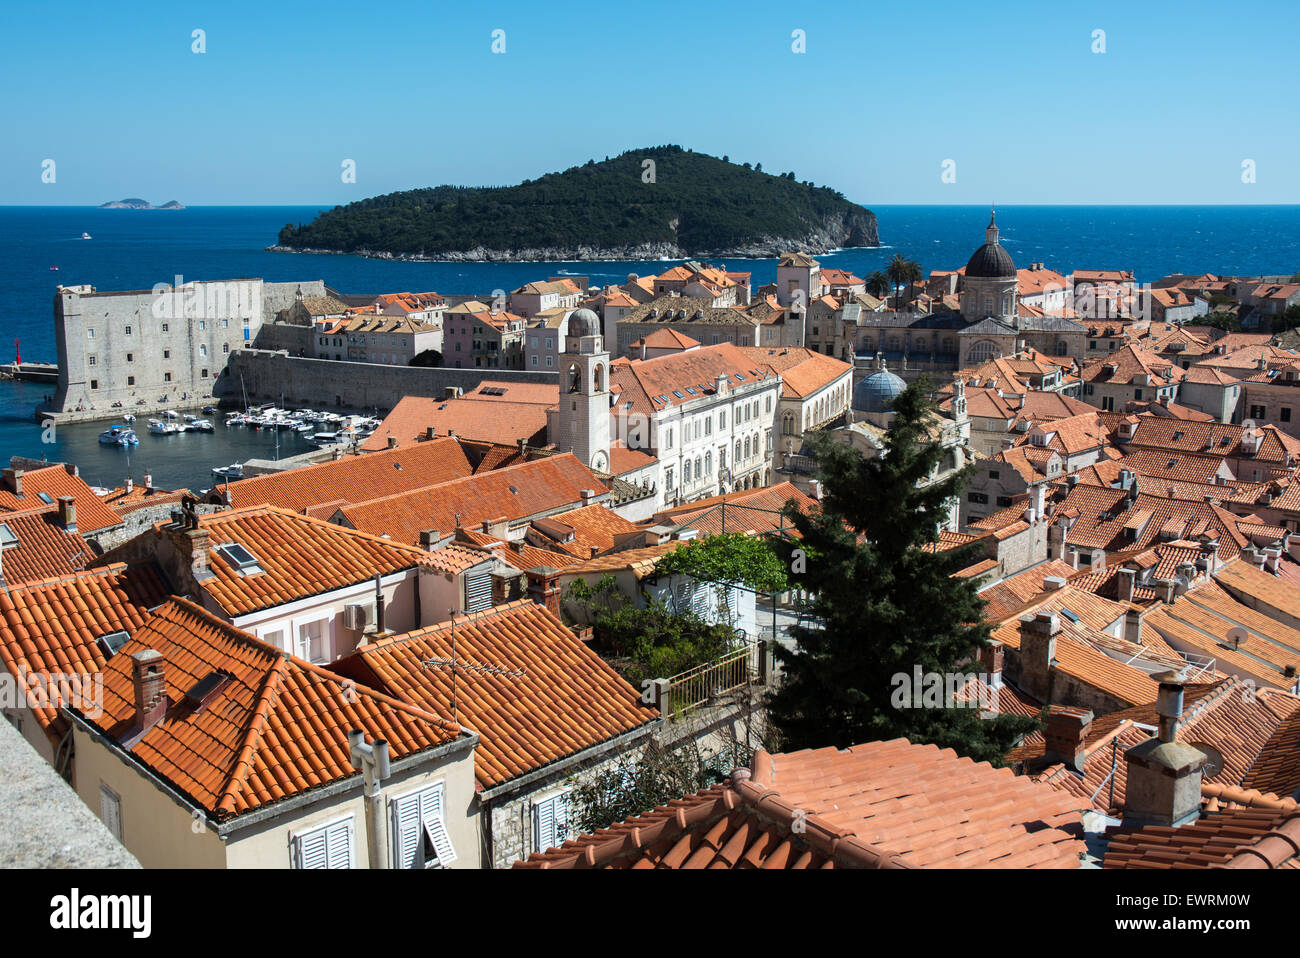 Tour de l'horloge de la vieille ville avec la cathédrale, la tour du trésor-,st. john's fort et l'île de Lokrum en arrière-plan, Dubrovnik, Croatie Banque D'Images